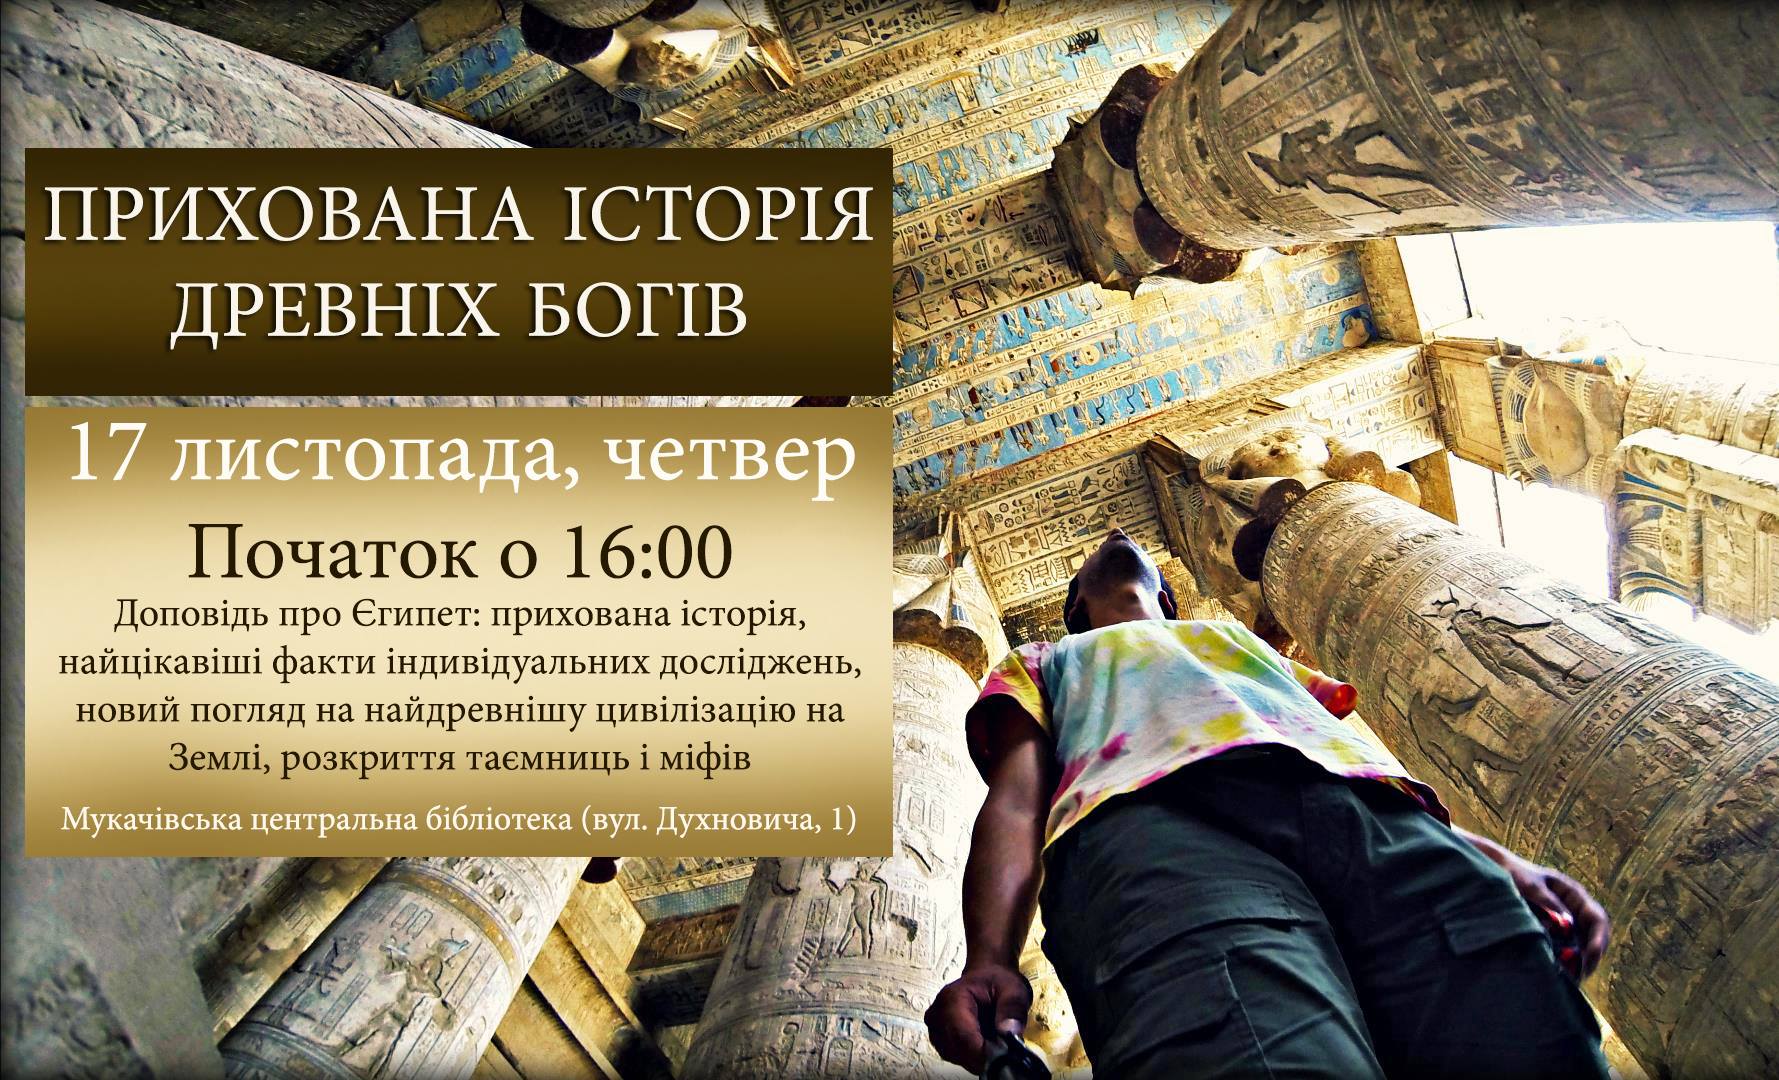 У четвер, 17 листопада, у Мукачеві розкажуть приховану історію древніх богів.
